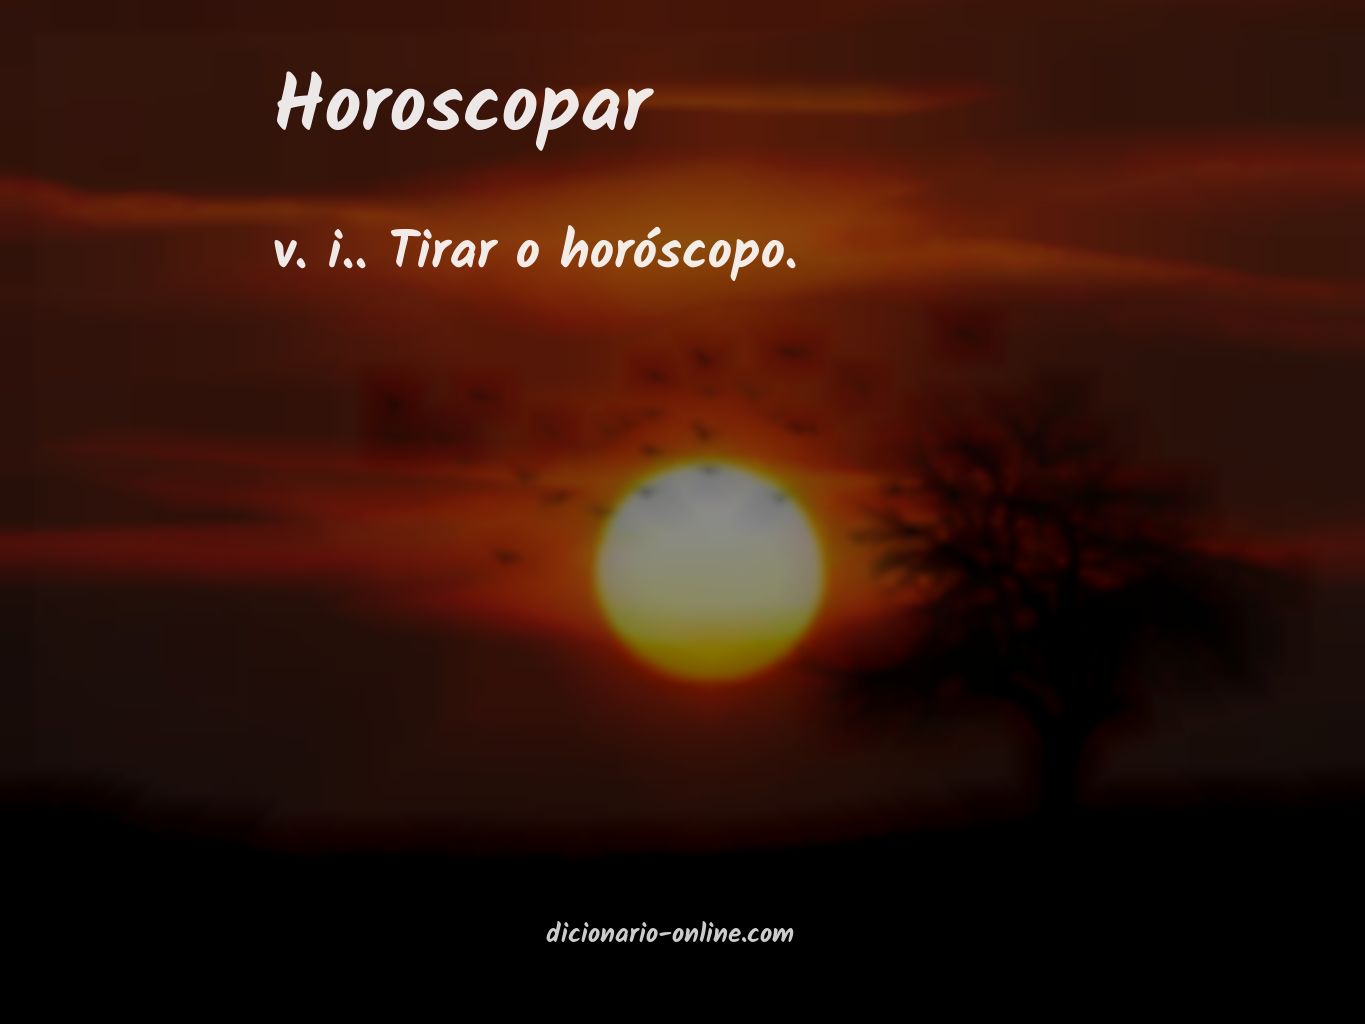 Significado de horoscopar